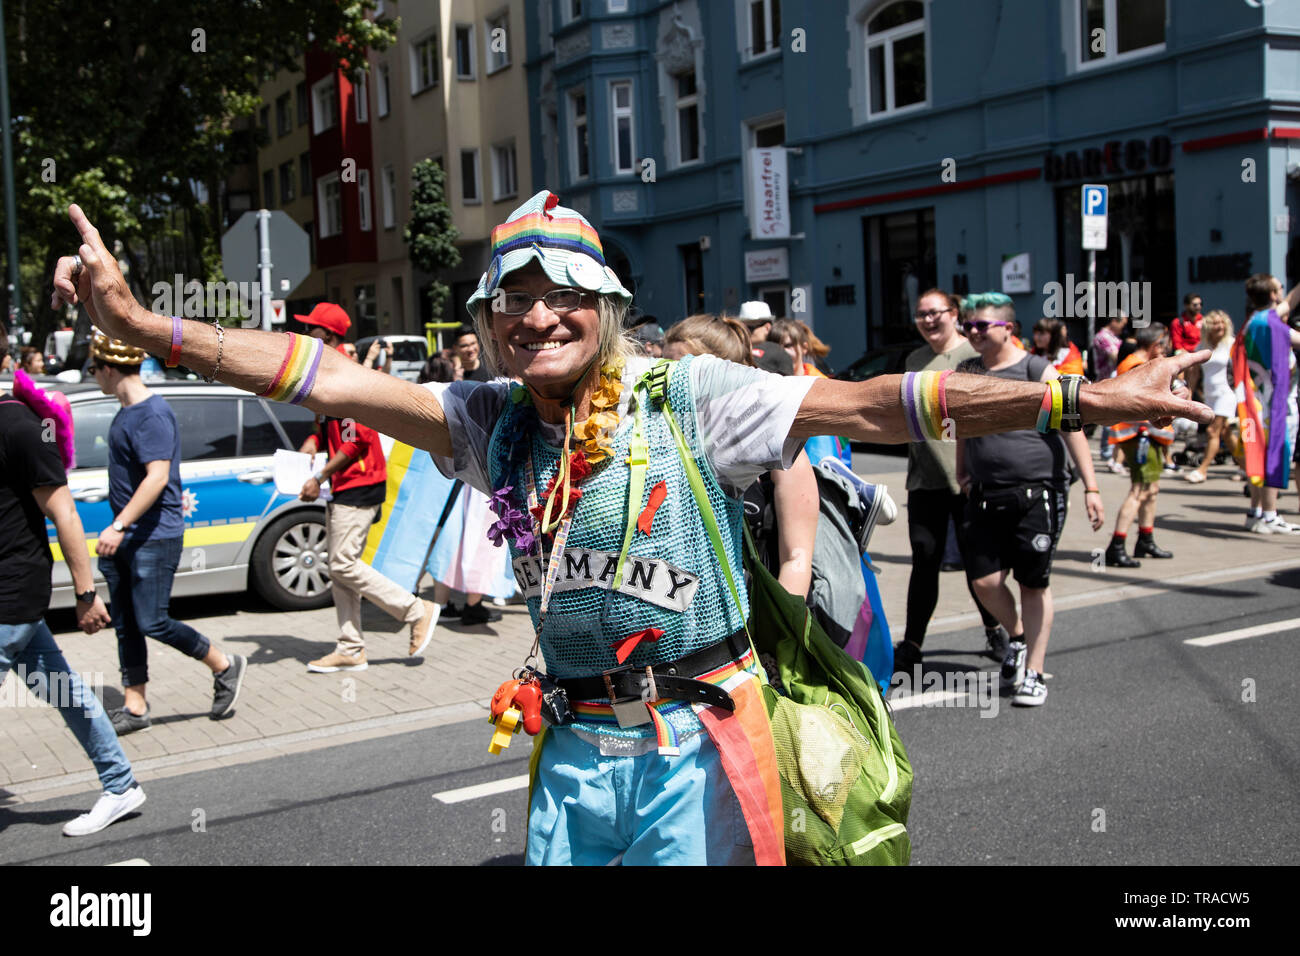 Düsseldorf, Deutschland. 1. Juni 2019. Die jährliche Parade zum Christopher Street Day, eine LGBT Pride Parade, macht sich auf den Weg. CSD ist eine Feier der Schwulen, Lesben, Bisexuellen und Transgender Menschenrechte und ist mit Festivals und Demonstrationen gefeiert. Foto: Bettina Strenske/Alamy leben Nachrichten Stockfoto